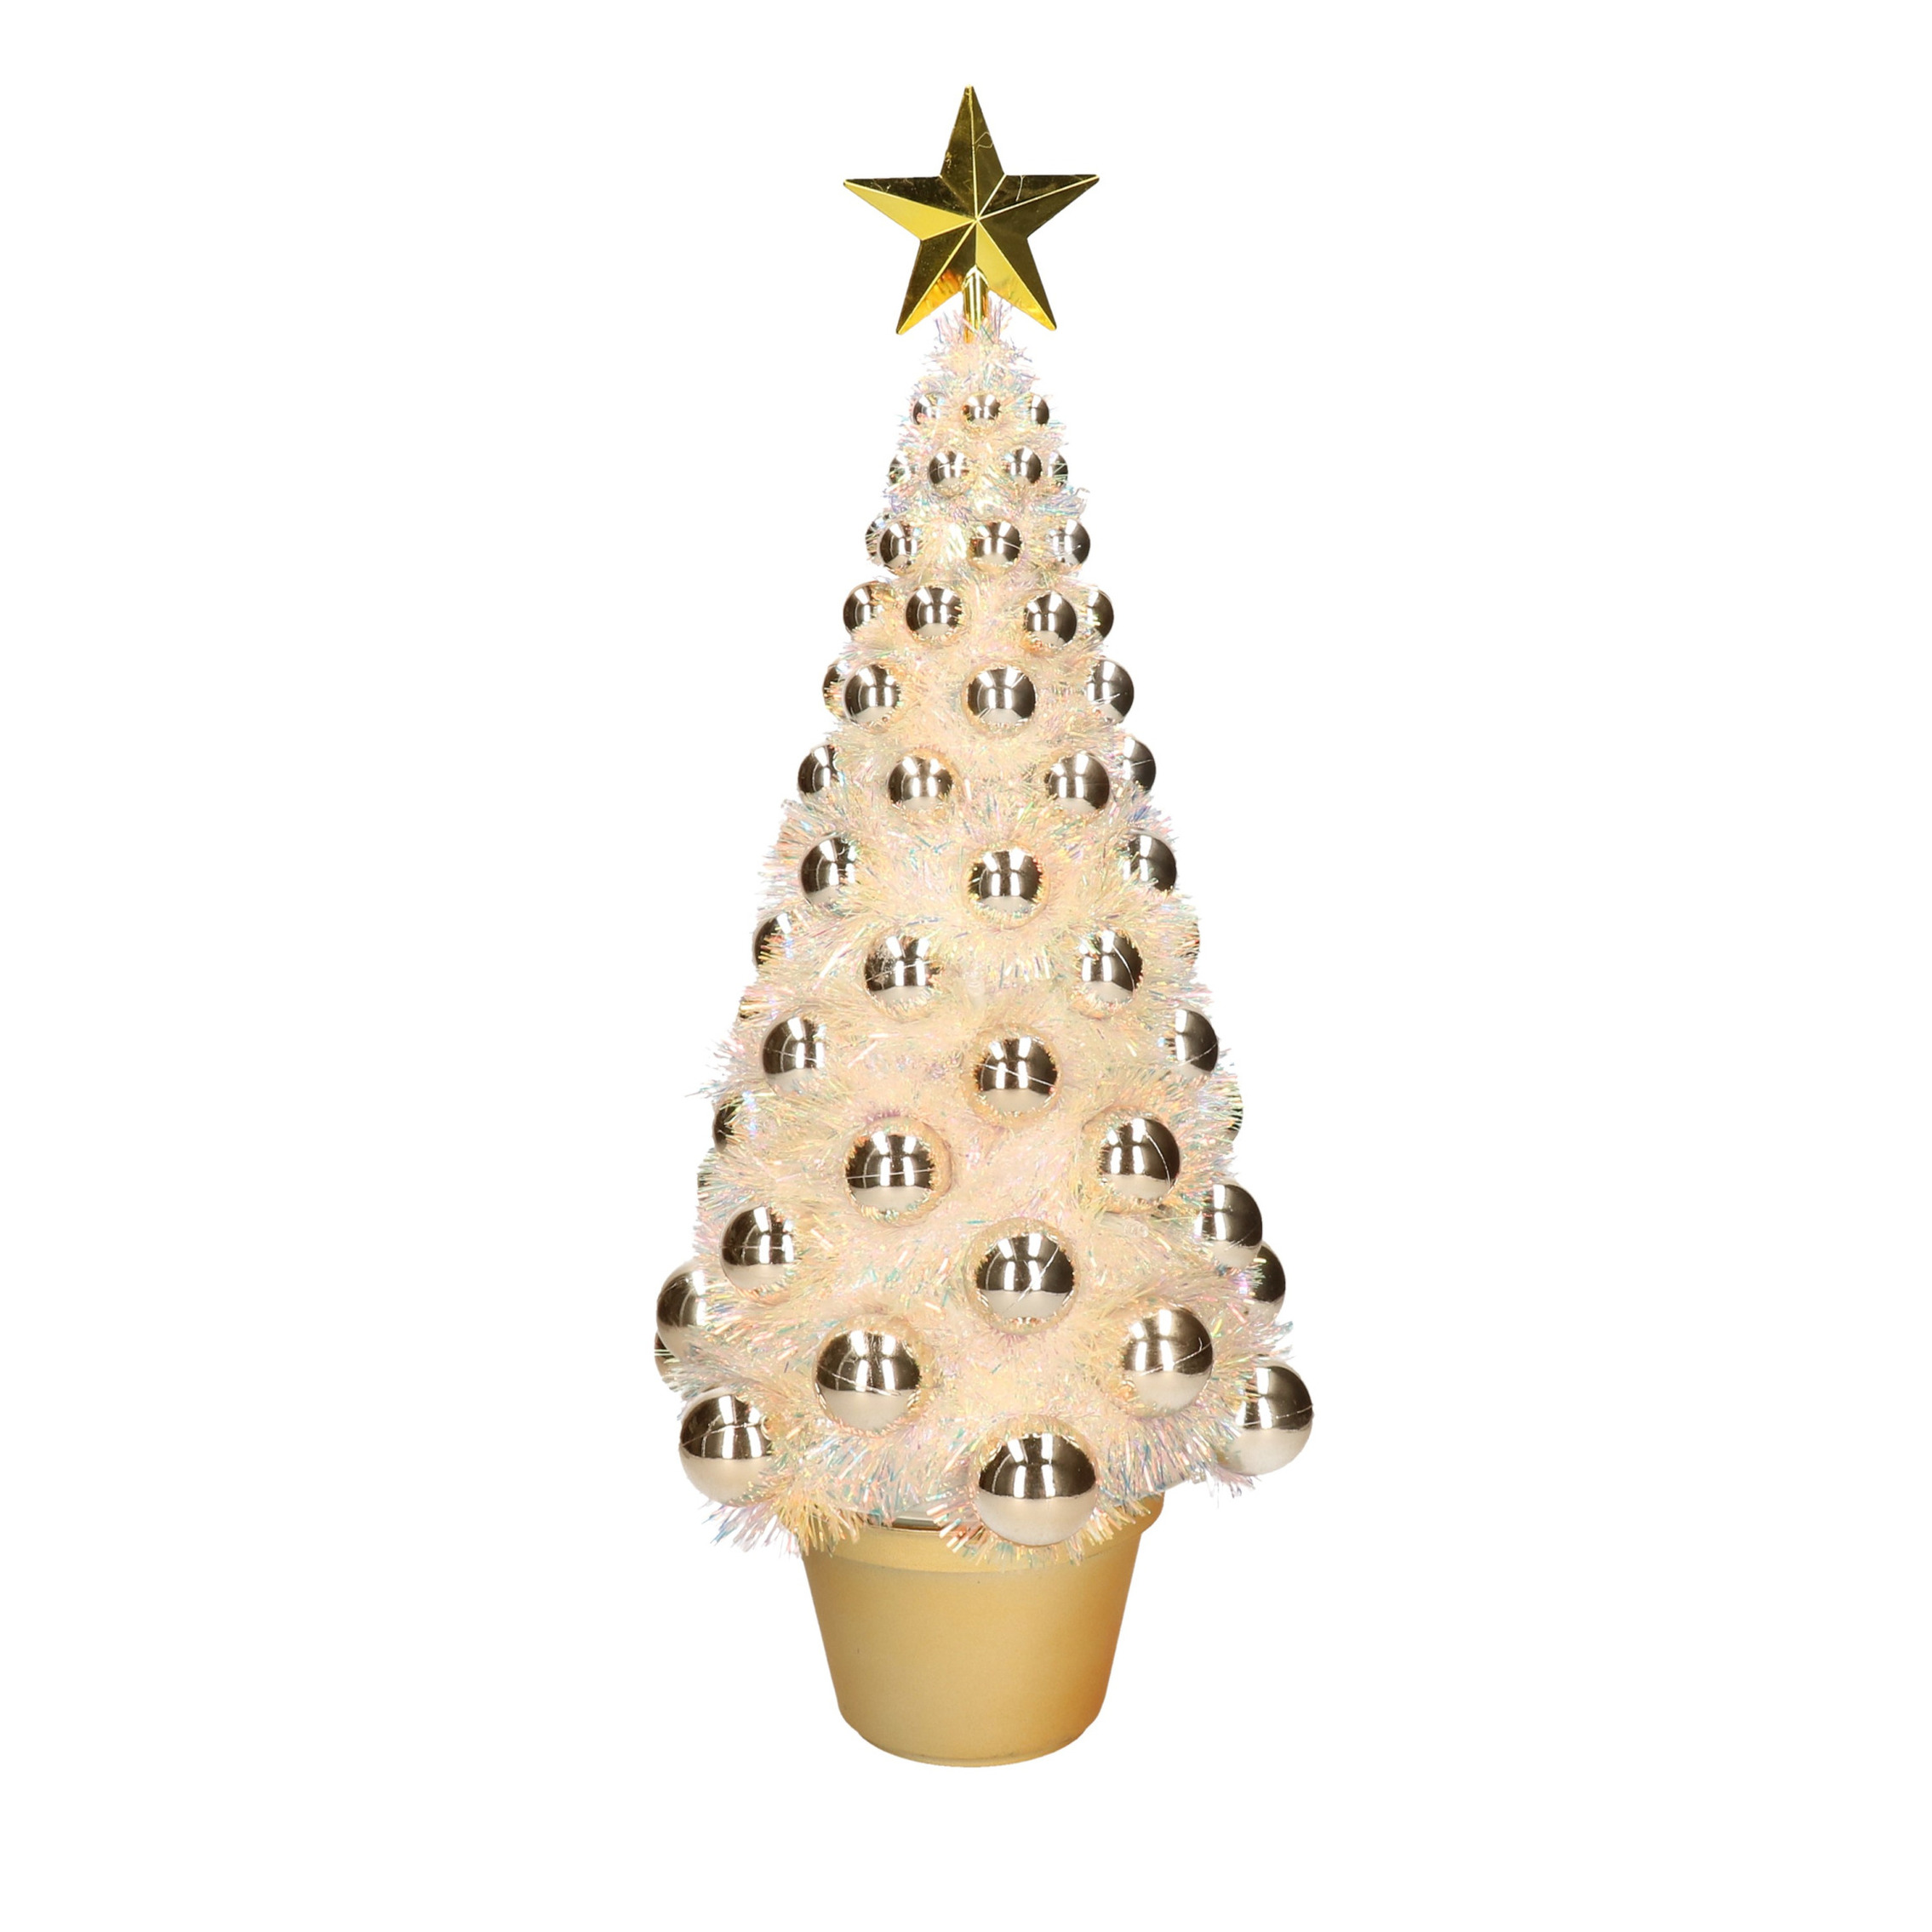 Complete mini kunst kerstboom-kunstboom goud met lichtjes 50 cm